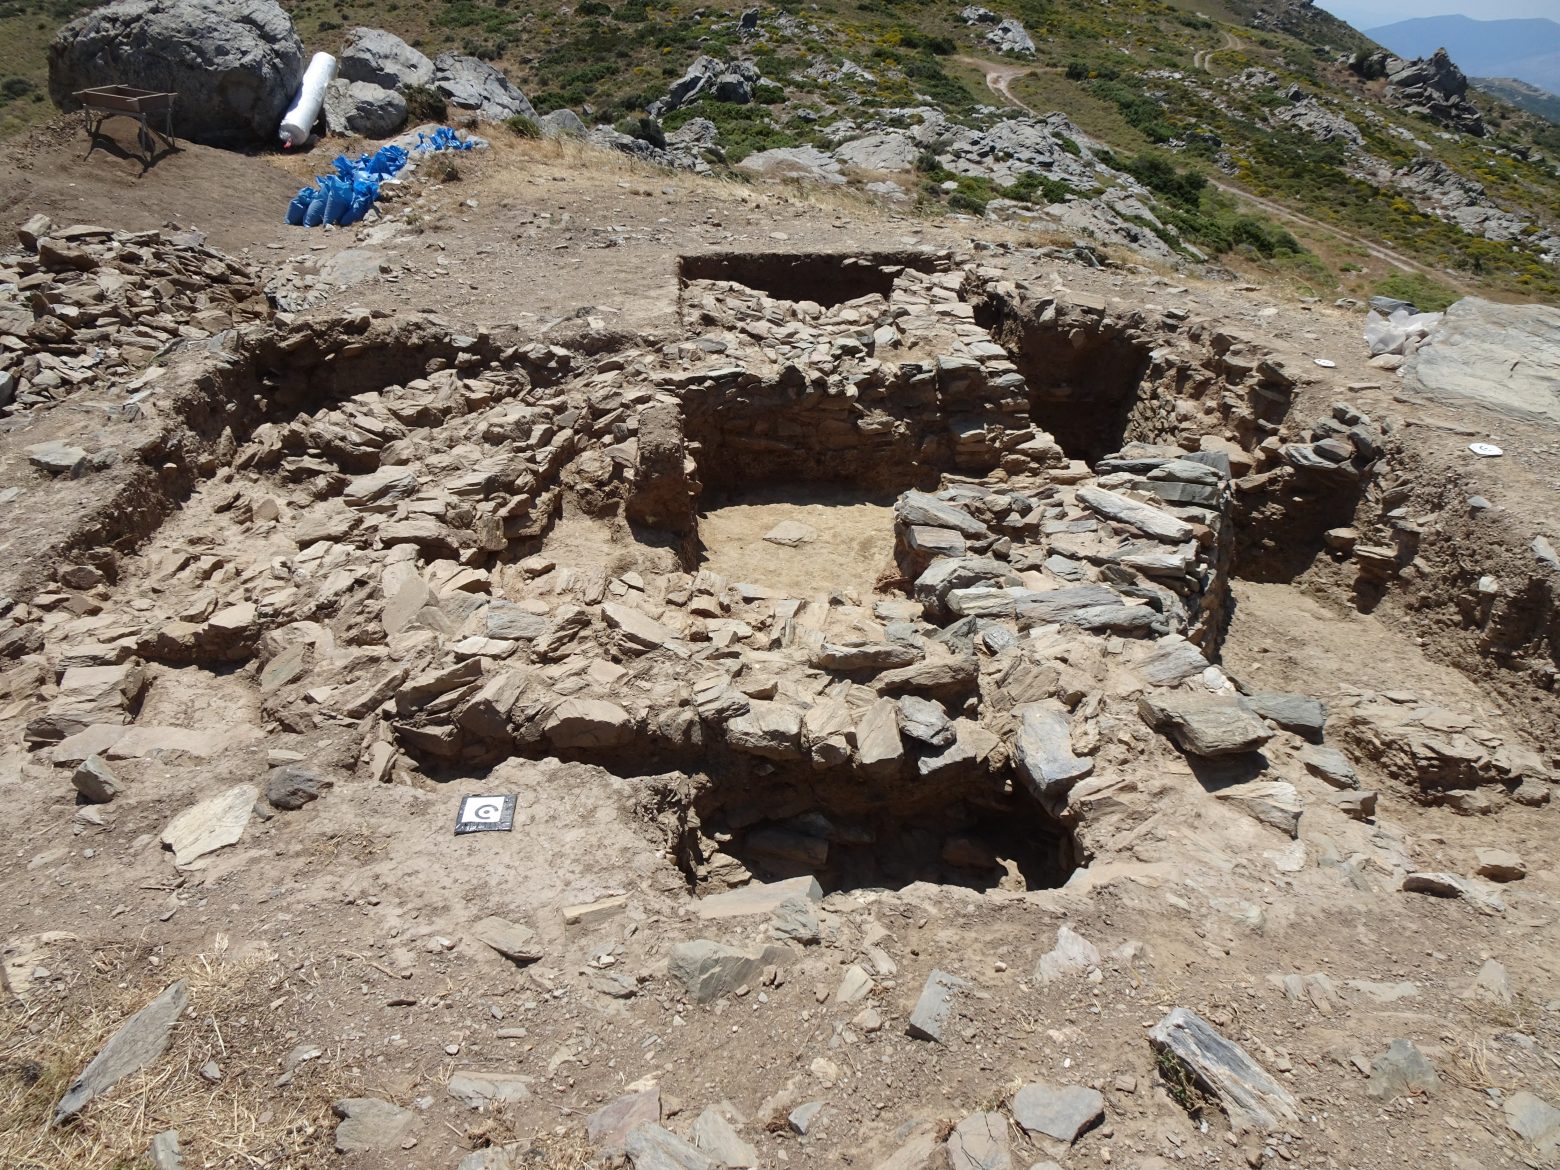 Σημαντικά ευρήματα στο Γκουριμάδι Καρύστου, στον αρχαιότερο οικισμό της περιοχής